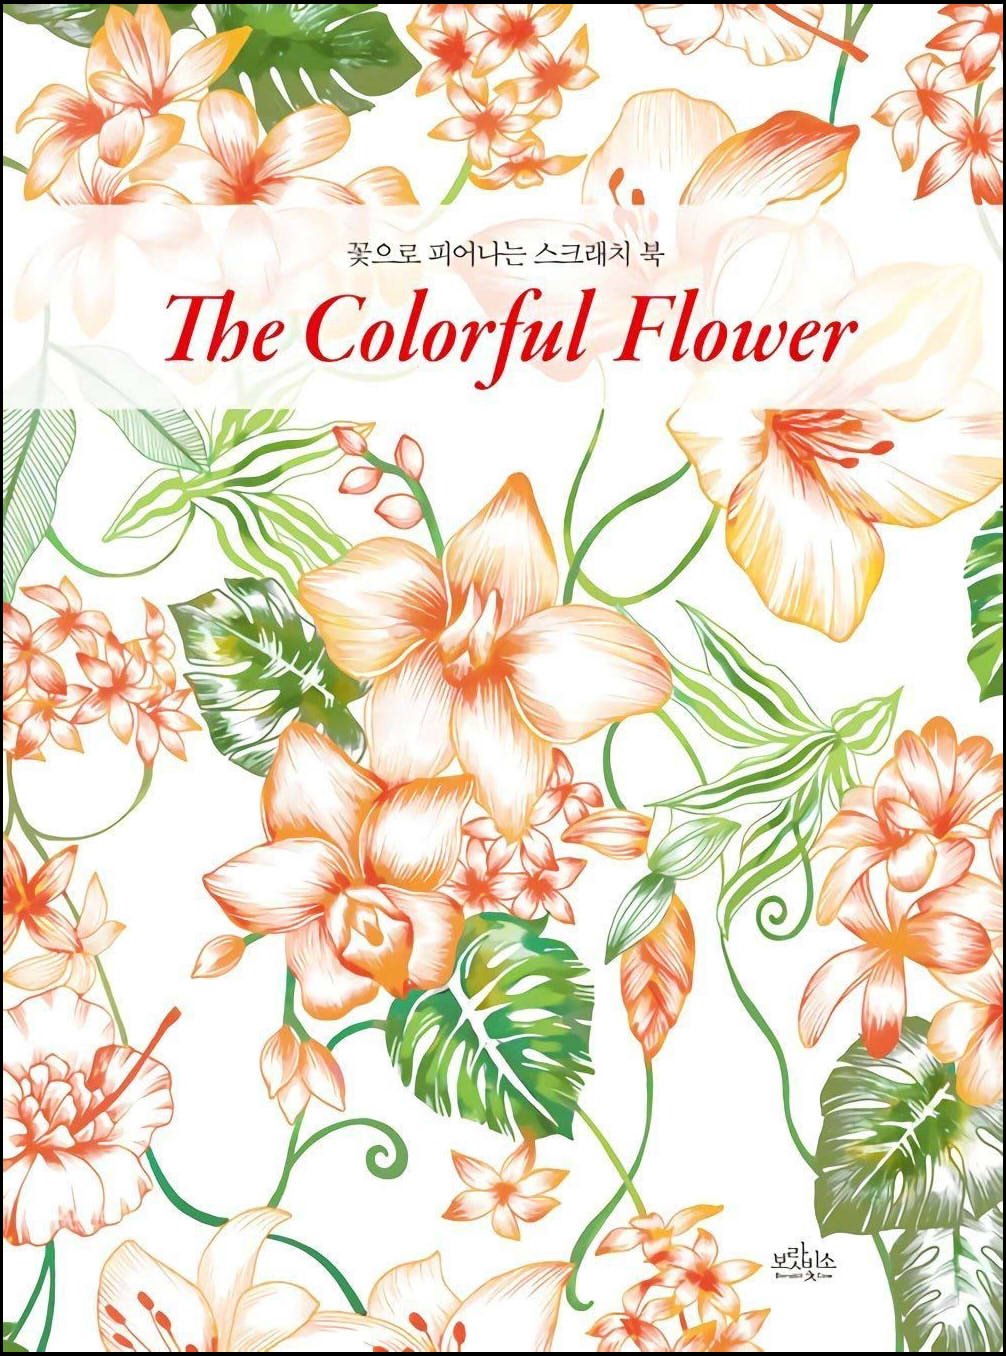 スクラッチアート 『 The Colorful Flower Scratch art coloring book 』 外国書籍 スクラッチ スクラッチ